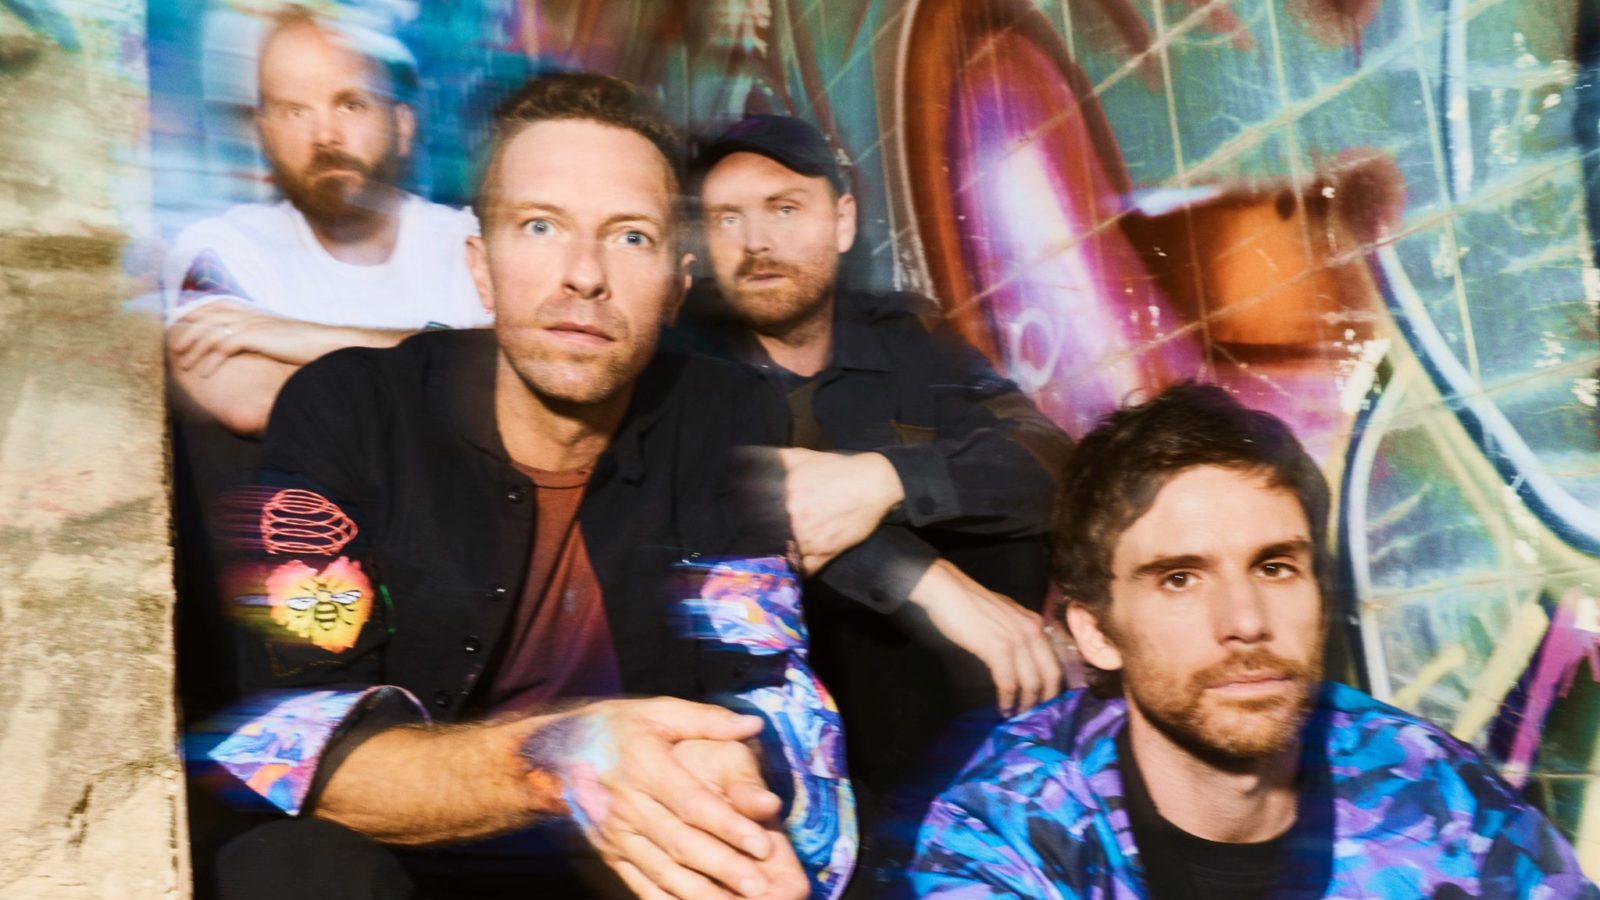 Coldplay 2021, Music of the Spheres - et spændende cover i modsætningen til den lidt kedsommelige musik.